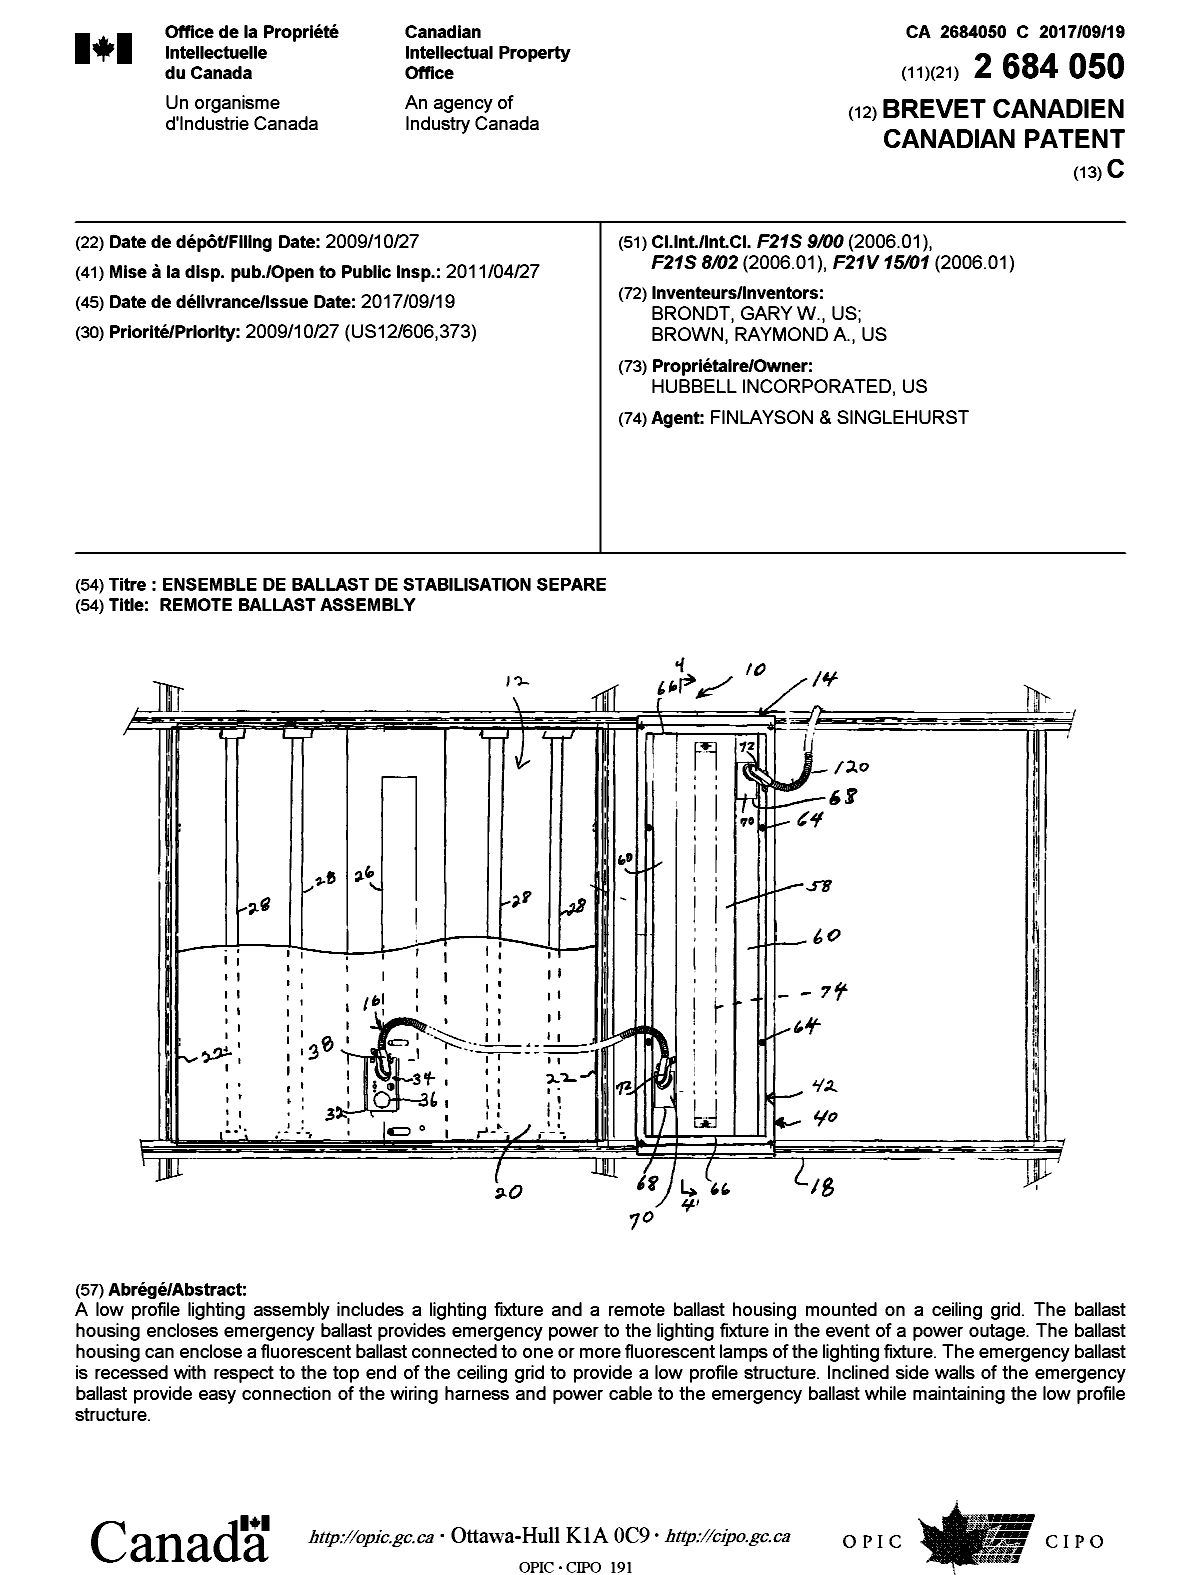 Document de brevet canadien 2684050. Page couverture 20170818. Image 1 de 1